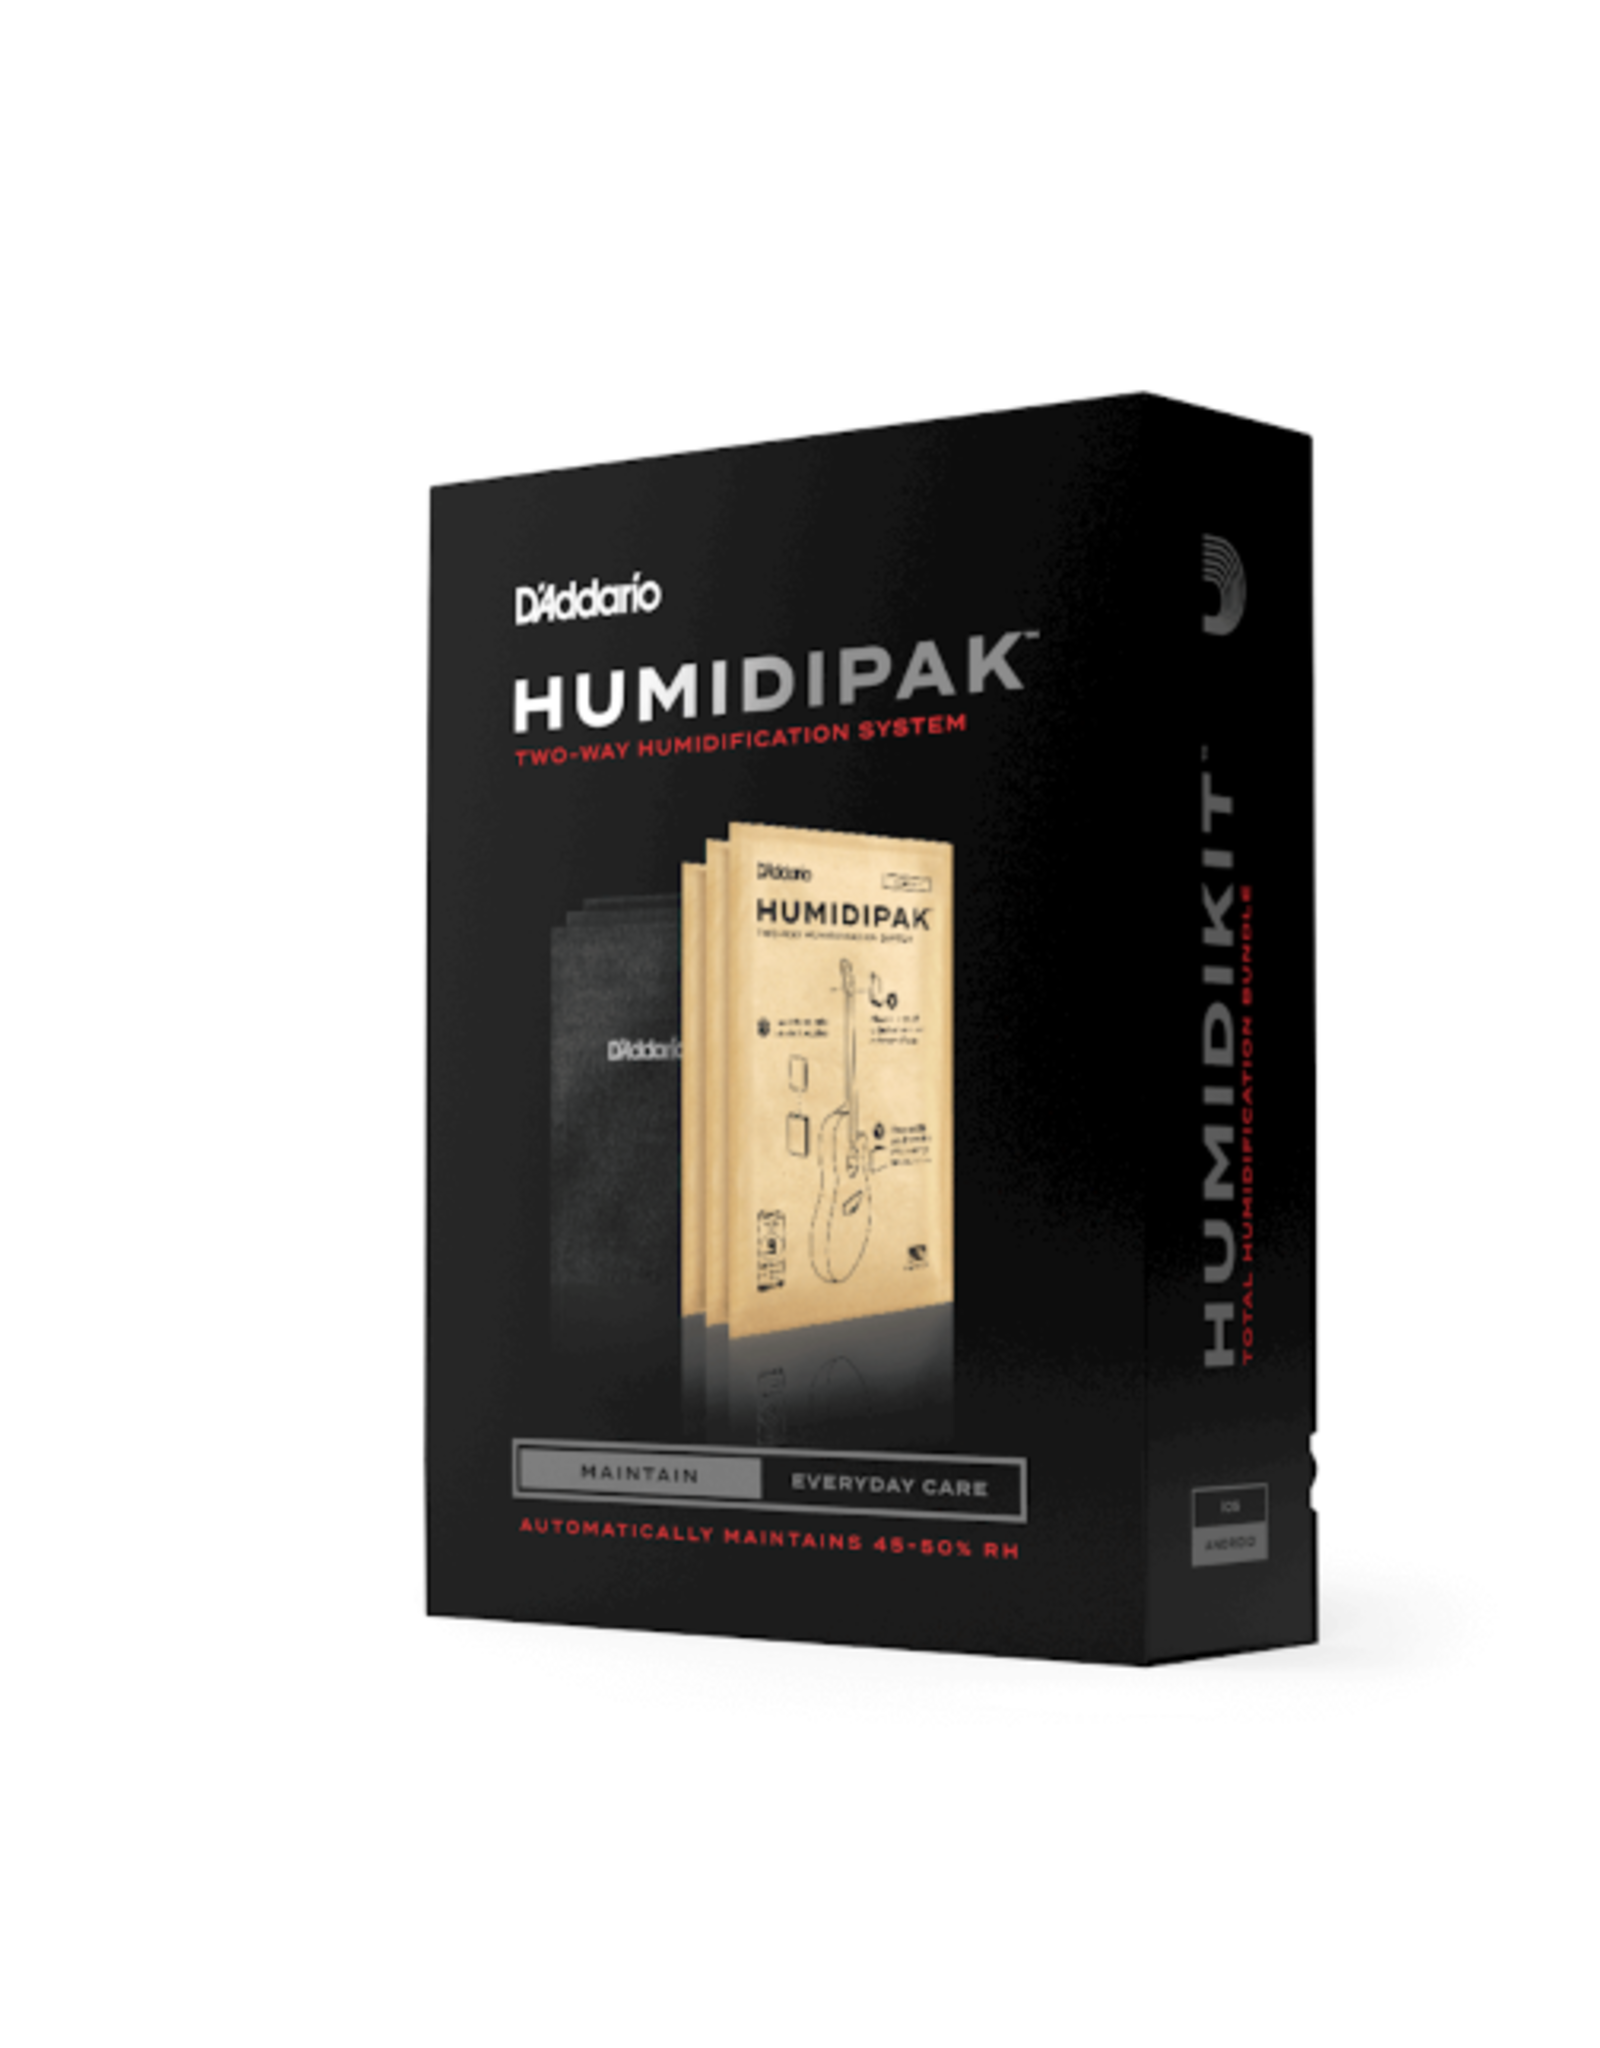 D'Addario D’Addario Humidipak Two Way Humidification System